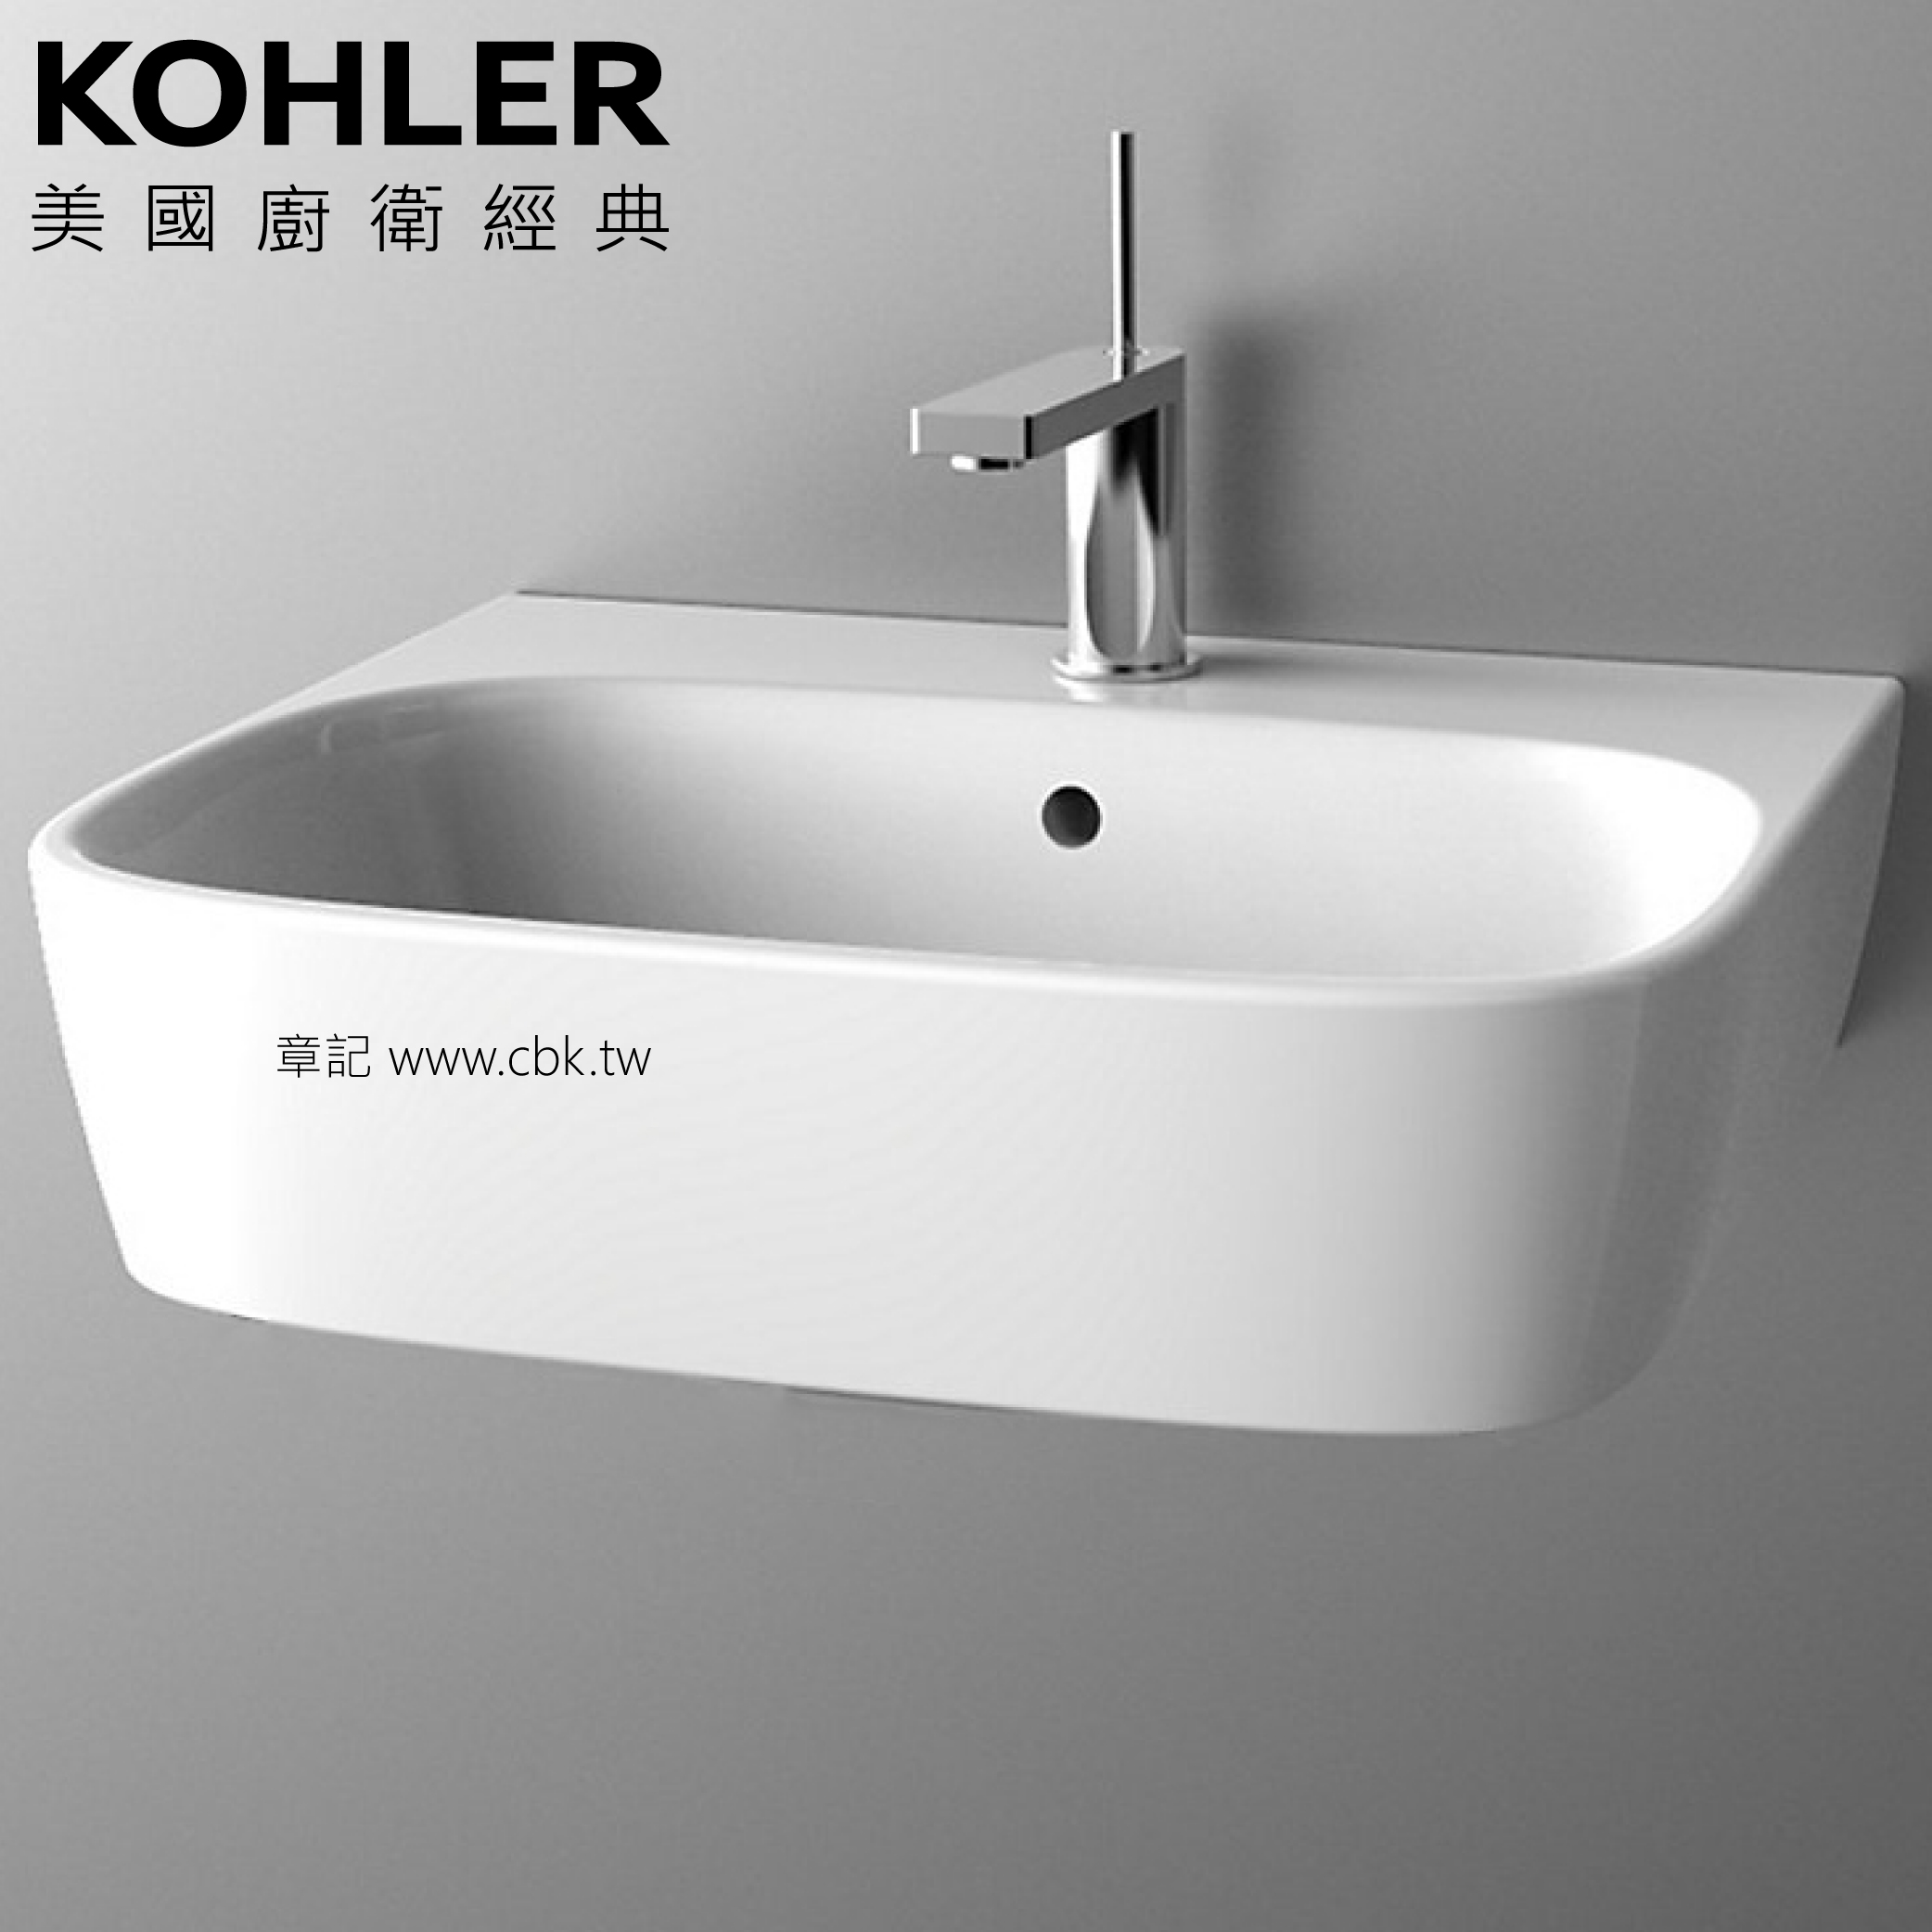 ★ 經銷精選優惠 ★ KOHLER ModernLife 壁掛式面盆(55cm) K-77767K-1-0  |面盆 . 浴櫃|面盆